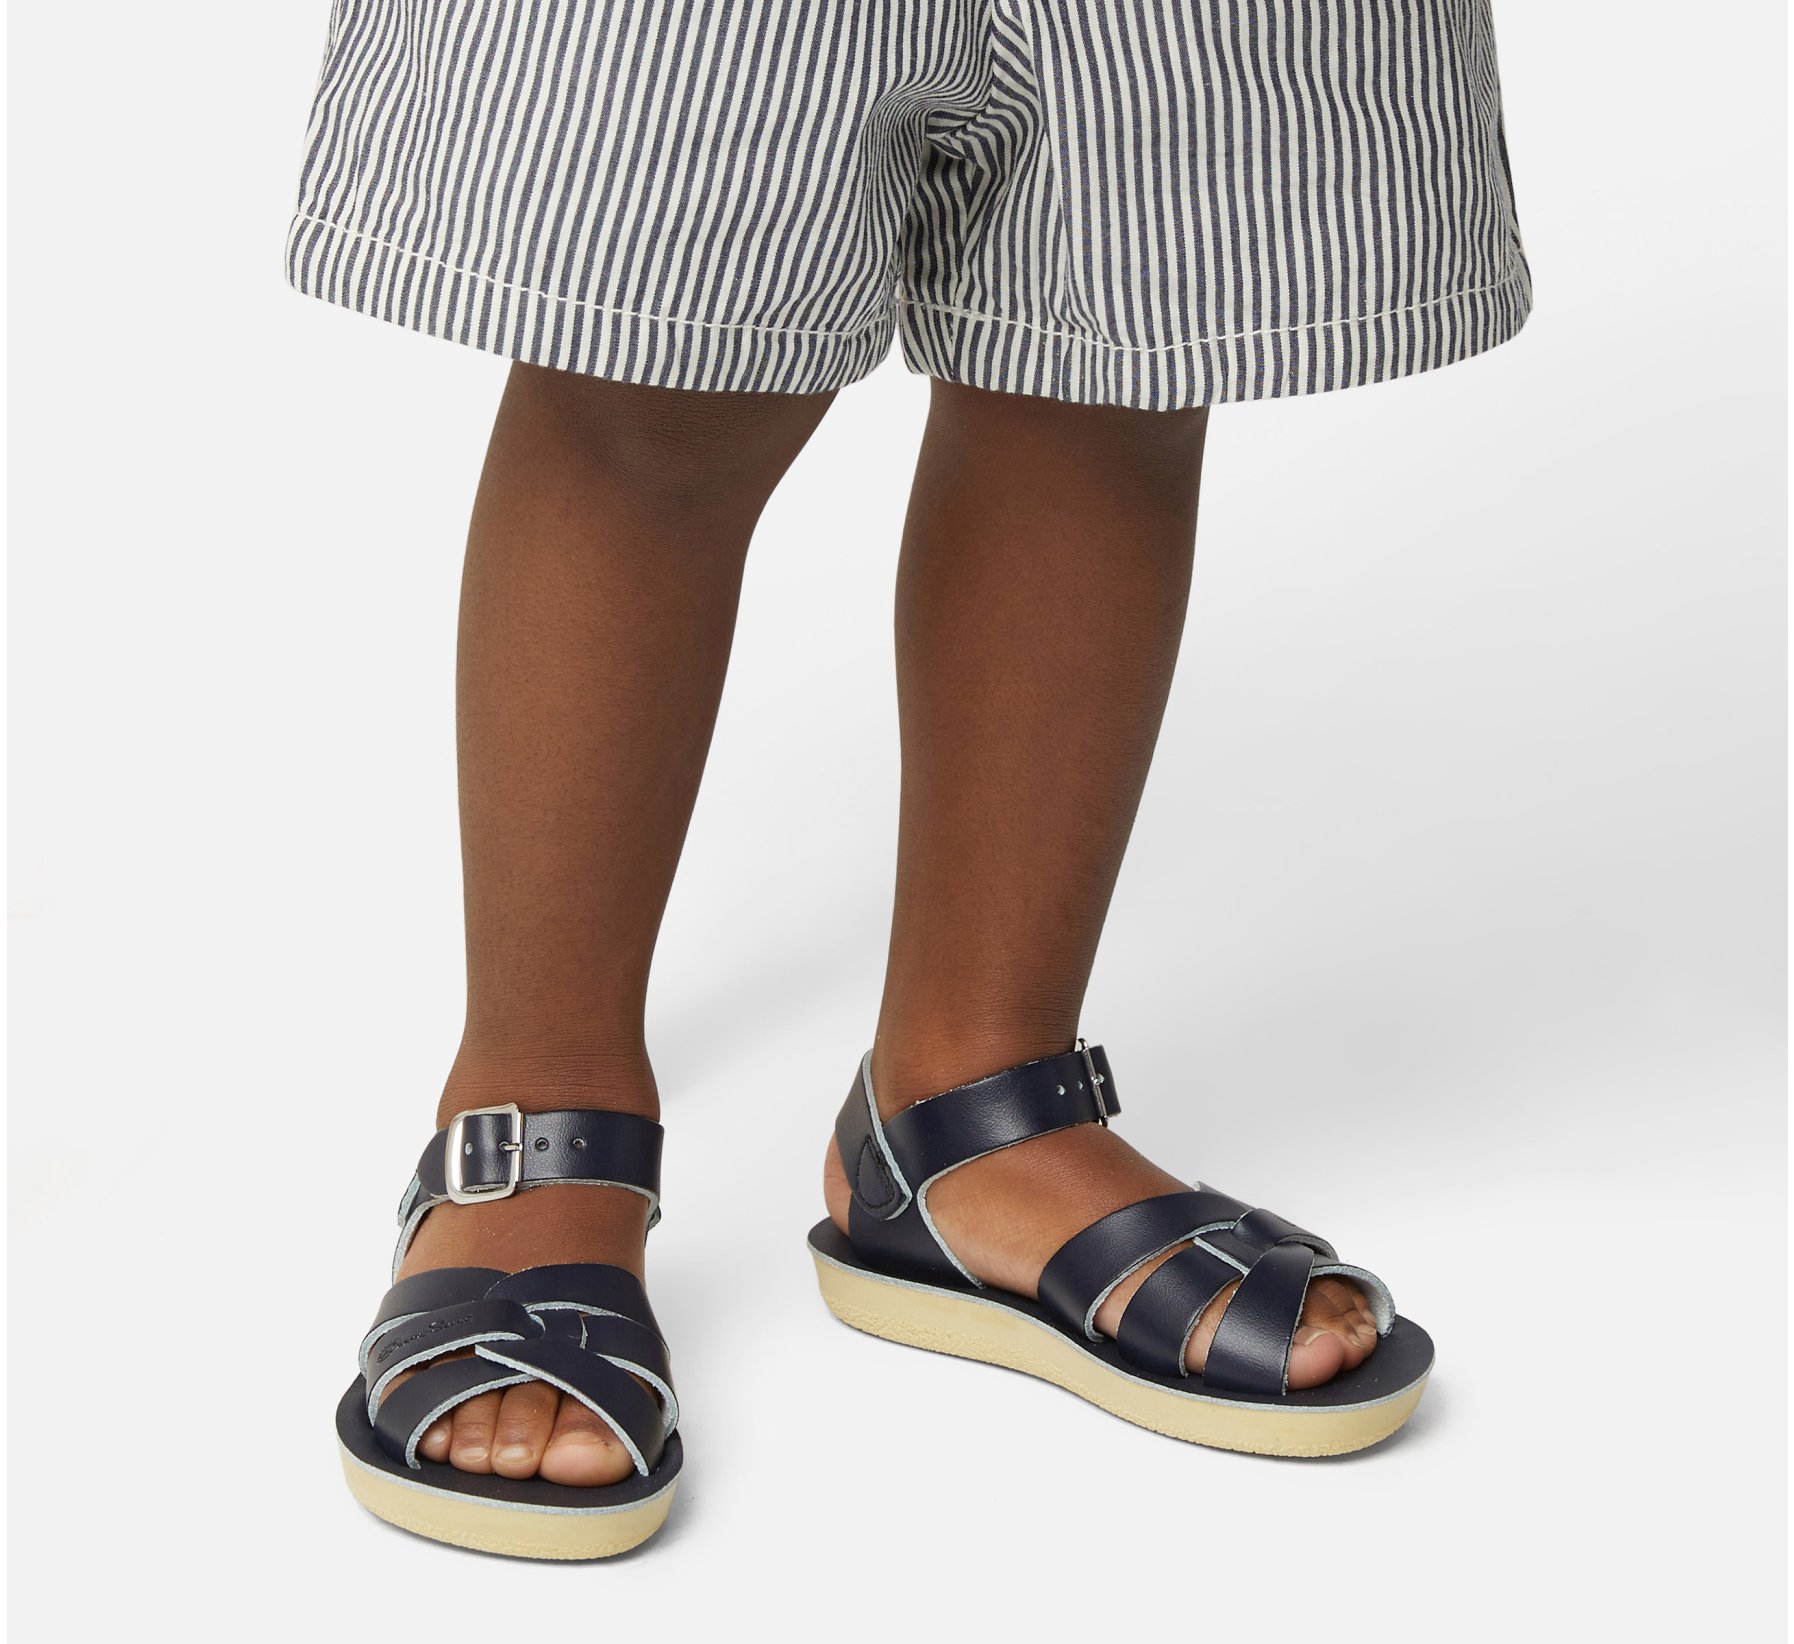 Swimmer Navy Kids Sandals - Salt Water Sandals